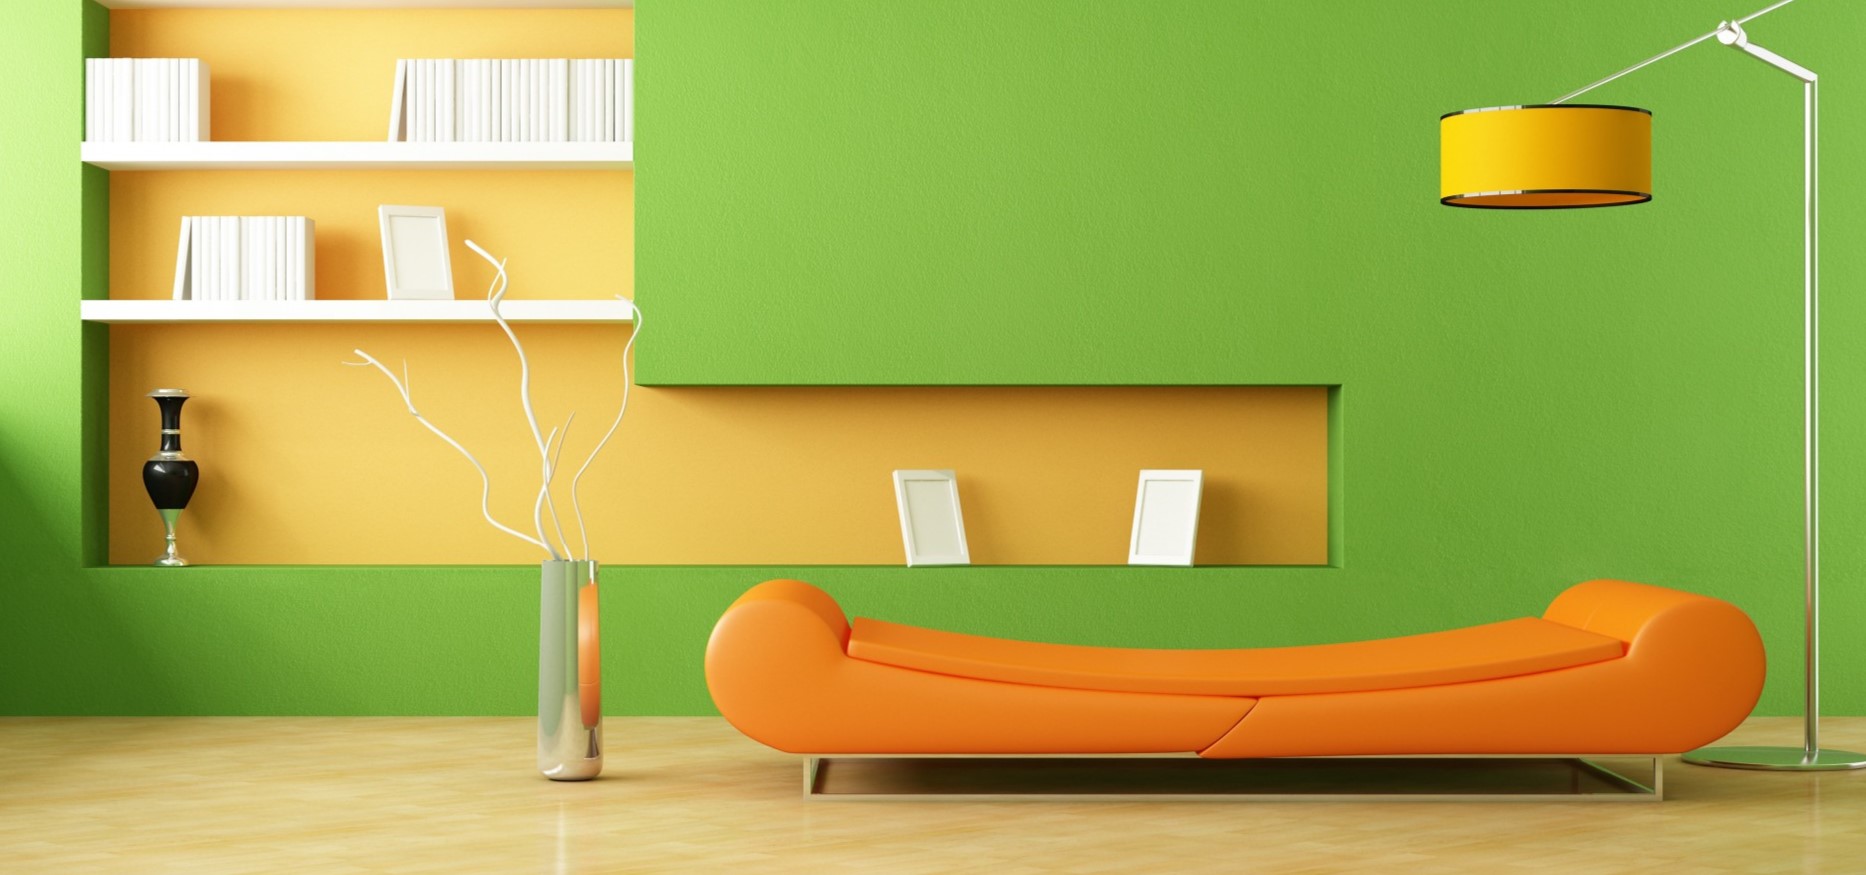 Оранжевый диван прекрасно сочетается с торшером в интерьере